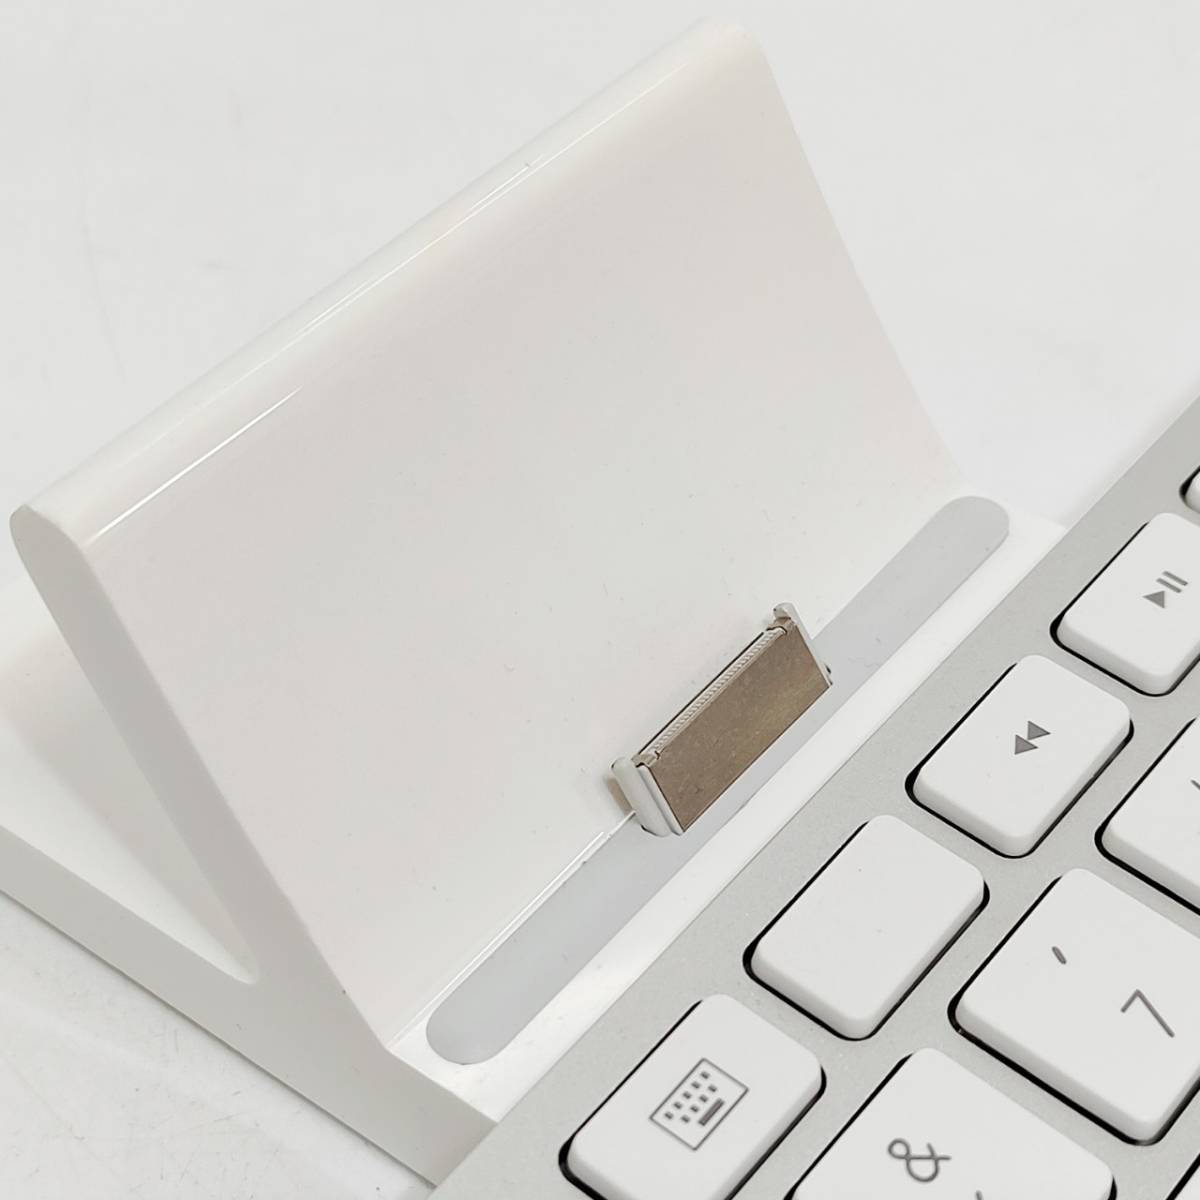 ●アップル A1359 キーボードドック Apple Keyboard Dock iMac用 ドックコネクタ付き 英語配列 PCアクセサリー M1160_画像4